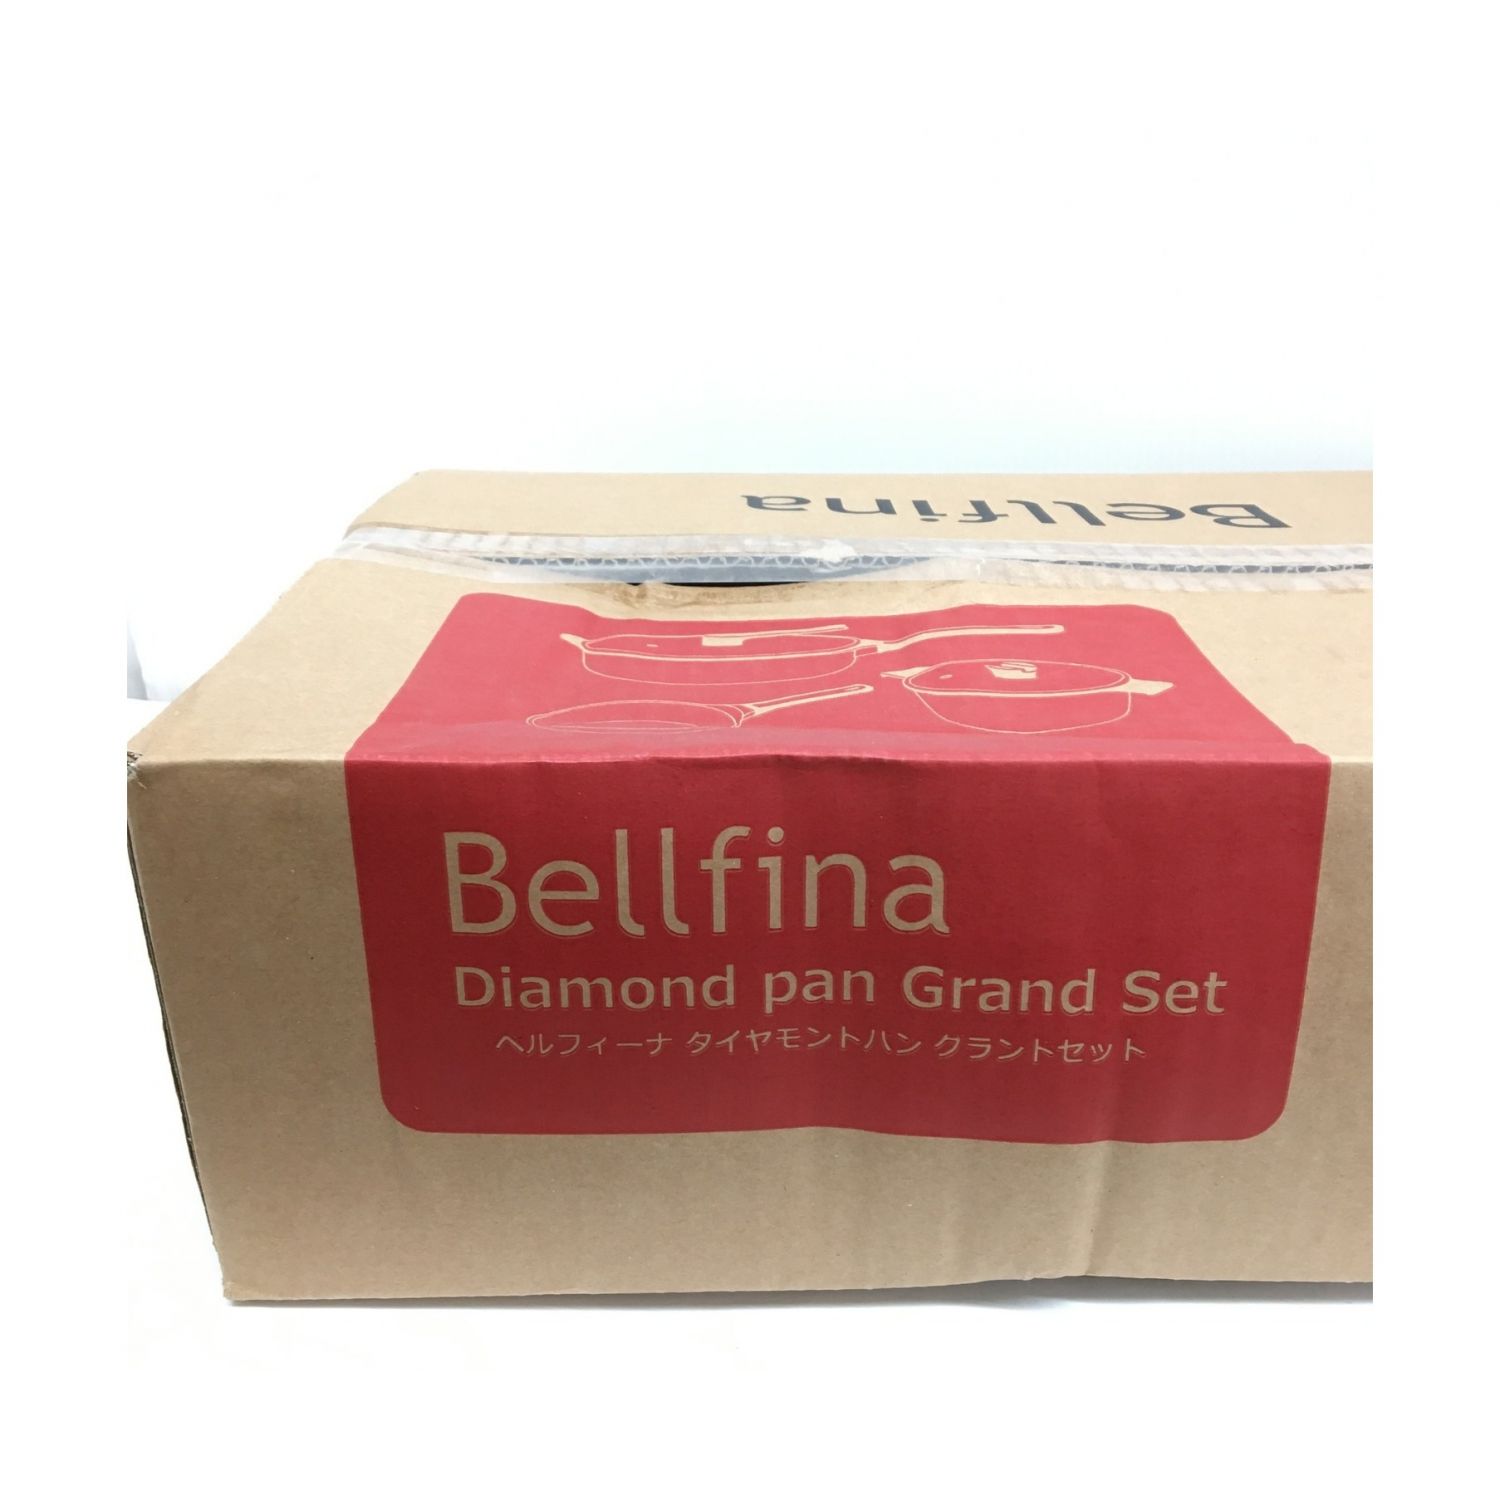 Bellfina (ベルフィーナ) ダイヤモンドパン グランドセット 